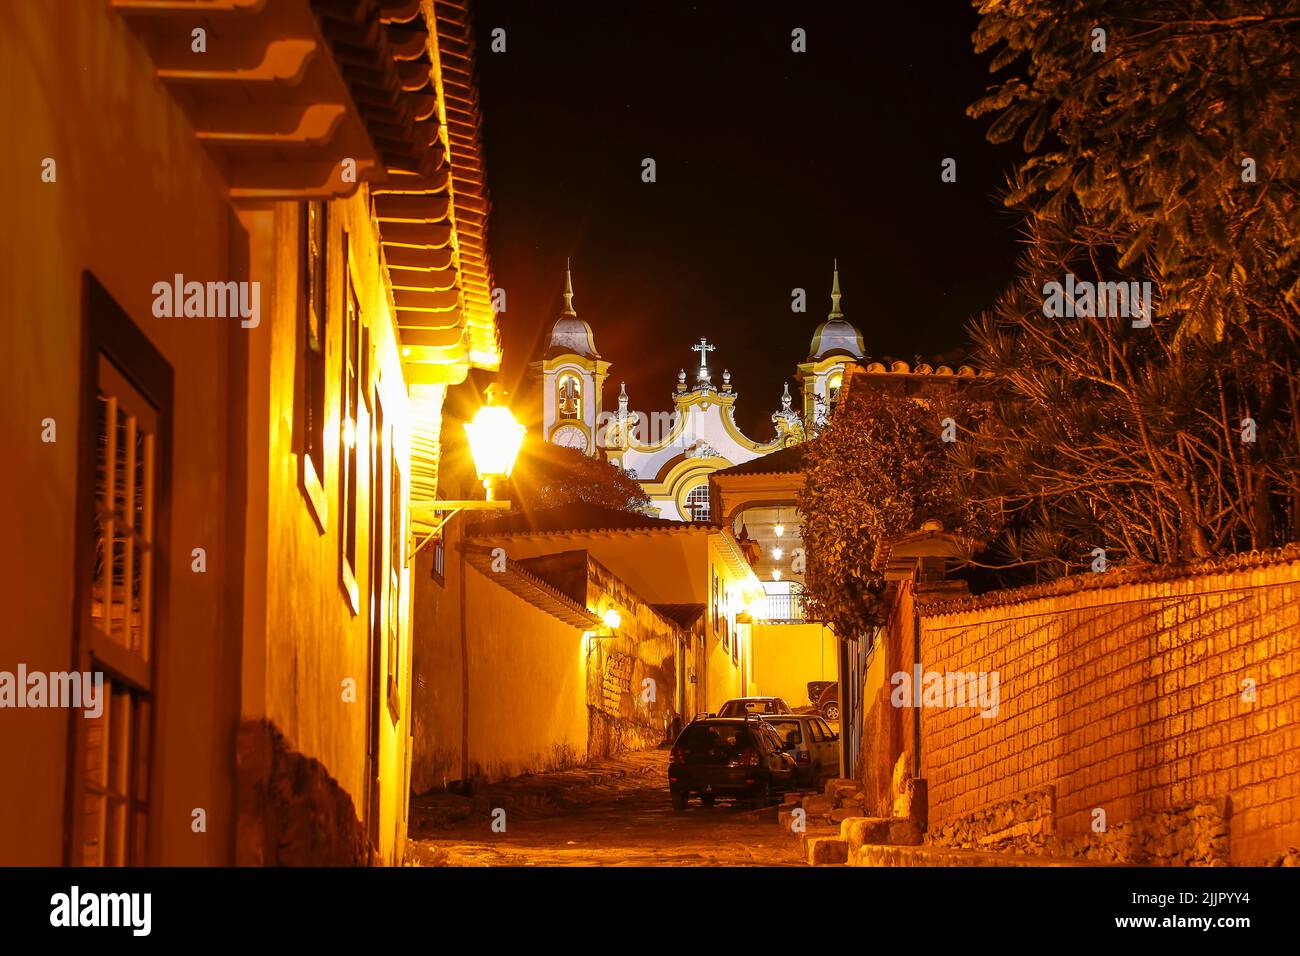 Vue nocturne de la rue et de l'église de santo antonio sur la ville historique de Tiradentes, intérieur de Minas Gerais. Banque D'Images